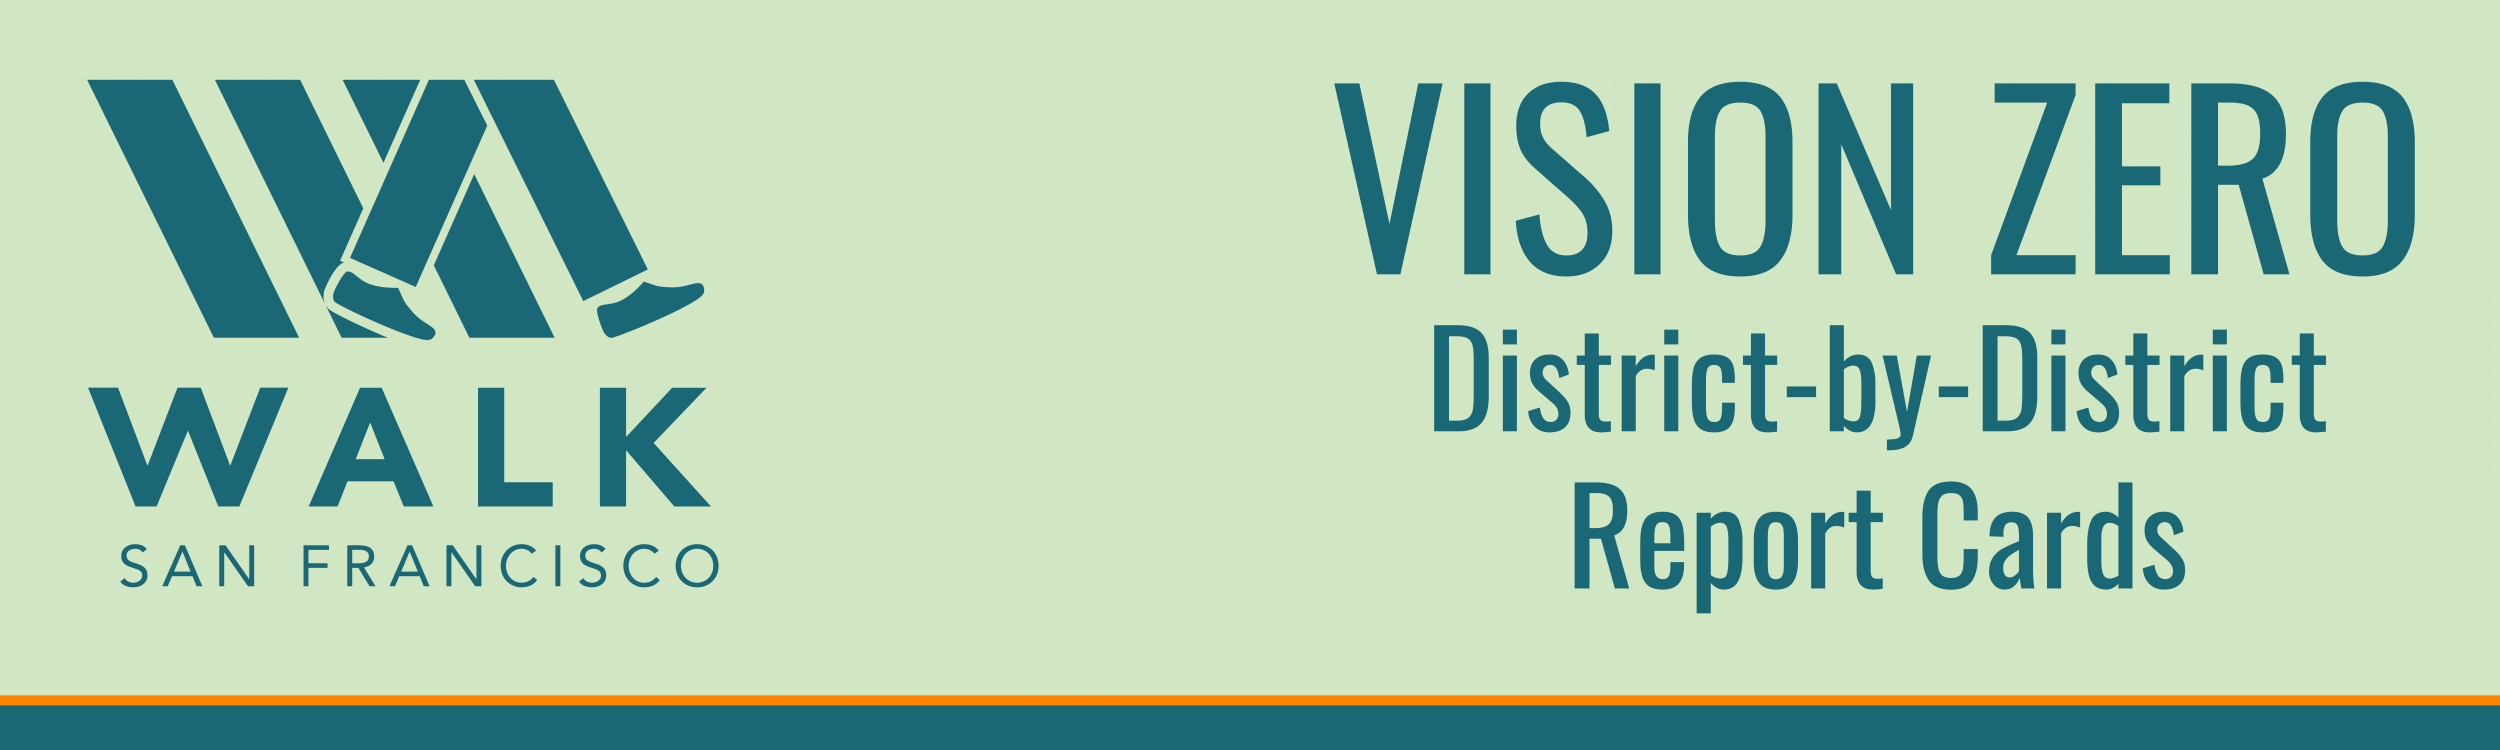 Vision Zero Report Card: District 2